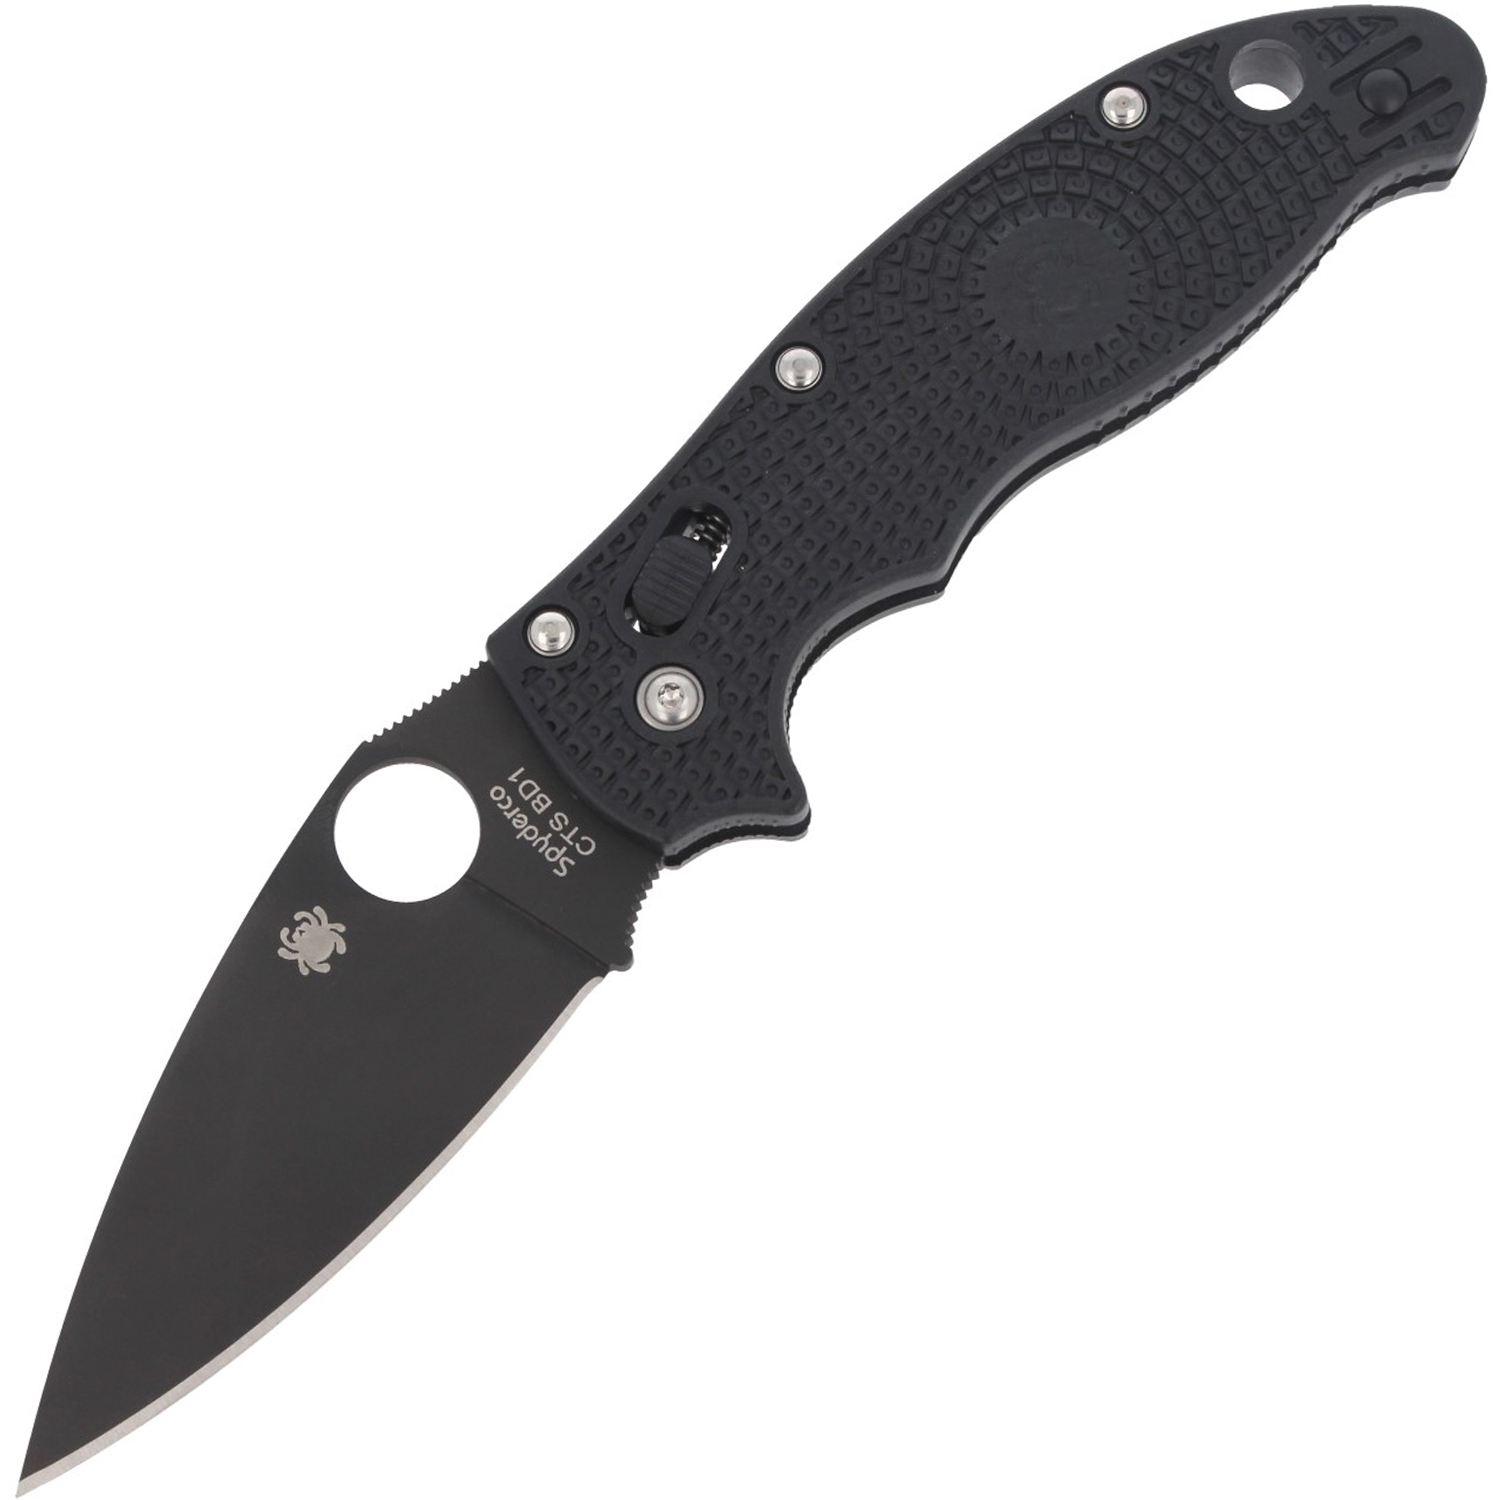 Нож складной Manix 2 Spyderco C101PBBK2, сталь Carpenter CTS™ - BD1 Alloy Black DLC Coated Plain, рукоять пластик FRCP, чёрный